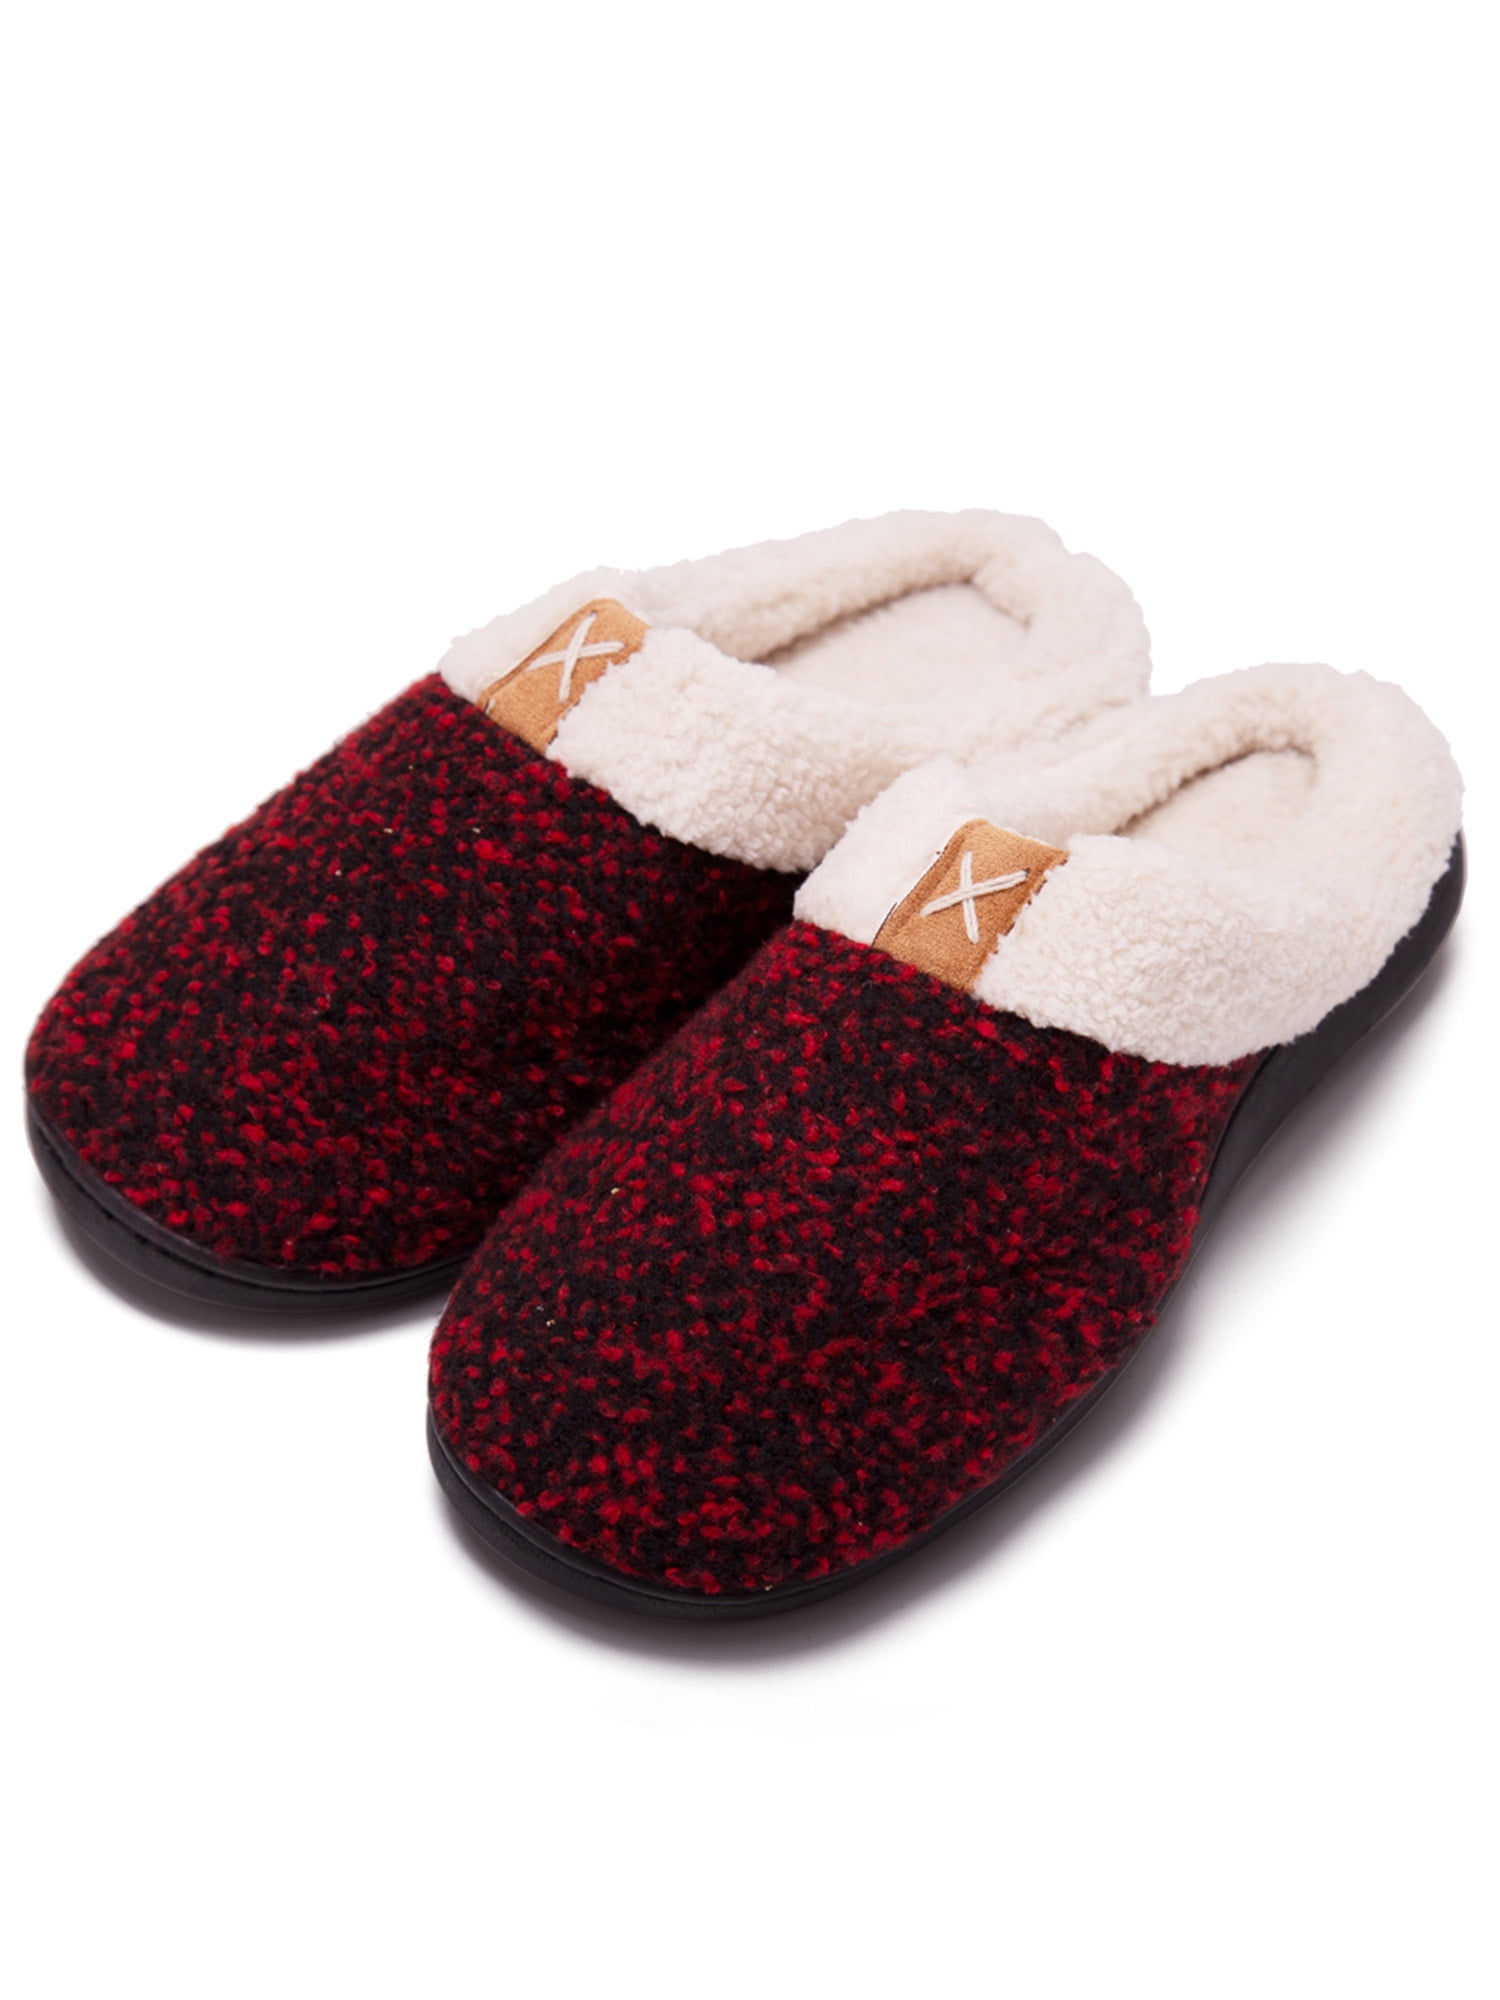 Women Men Winter Warm Soft Home Indoor Slip On House Fleece Slippers Shoes 34UK！ 